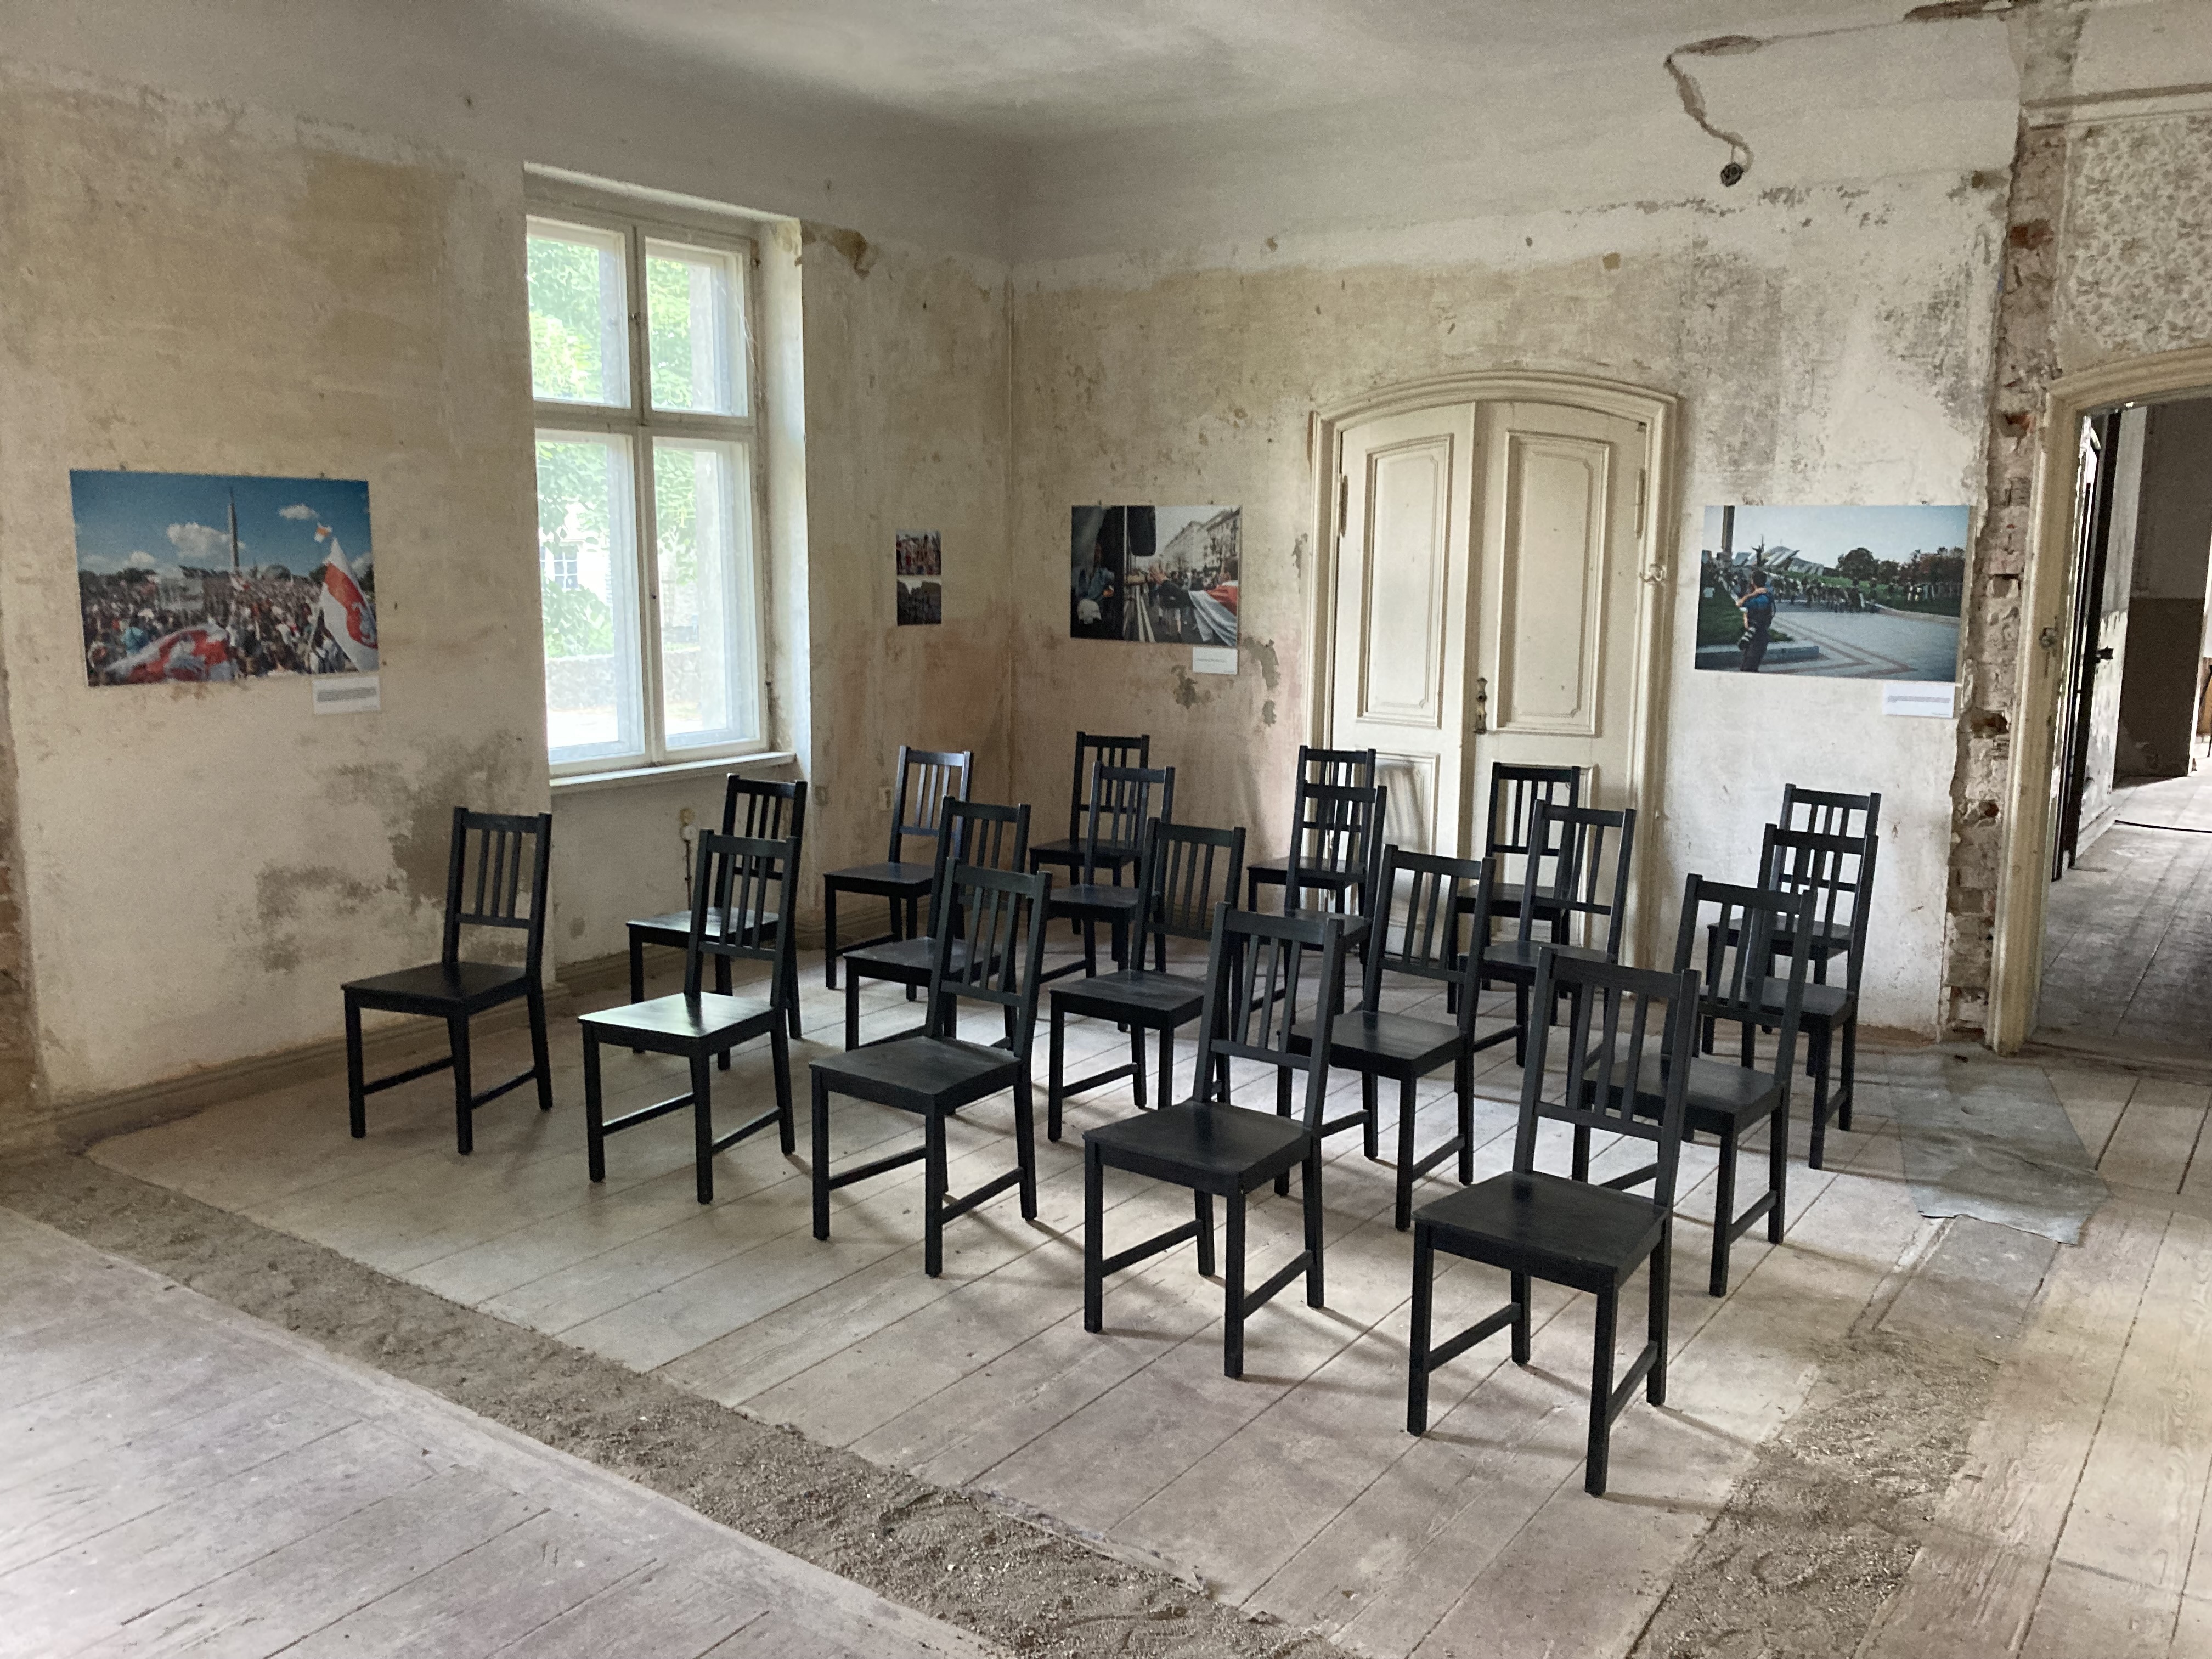 Veranstaltungsraum im Gutshaus der Zukunft Altfriedland wartet auf Gäste (und Sanierung) - Photo: © Amelie von Oppen